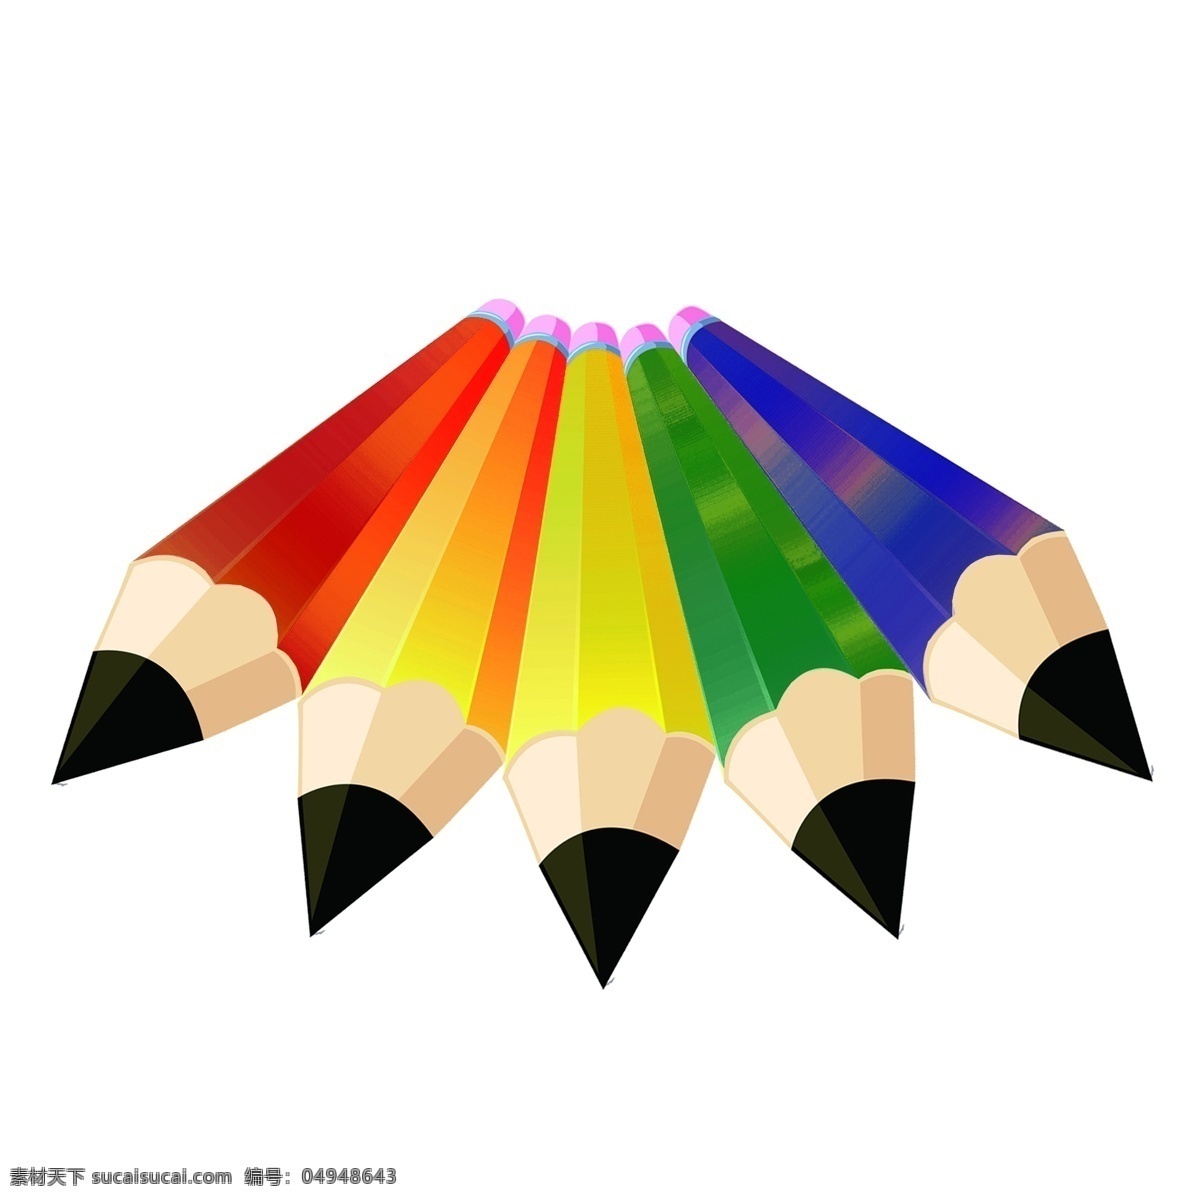 彩色 铅笔 彩虹桥 扇形 透视 文具 彩虹 五颜六色 彩色铅笔